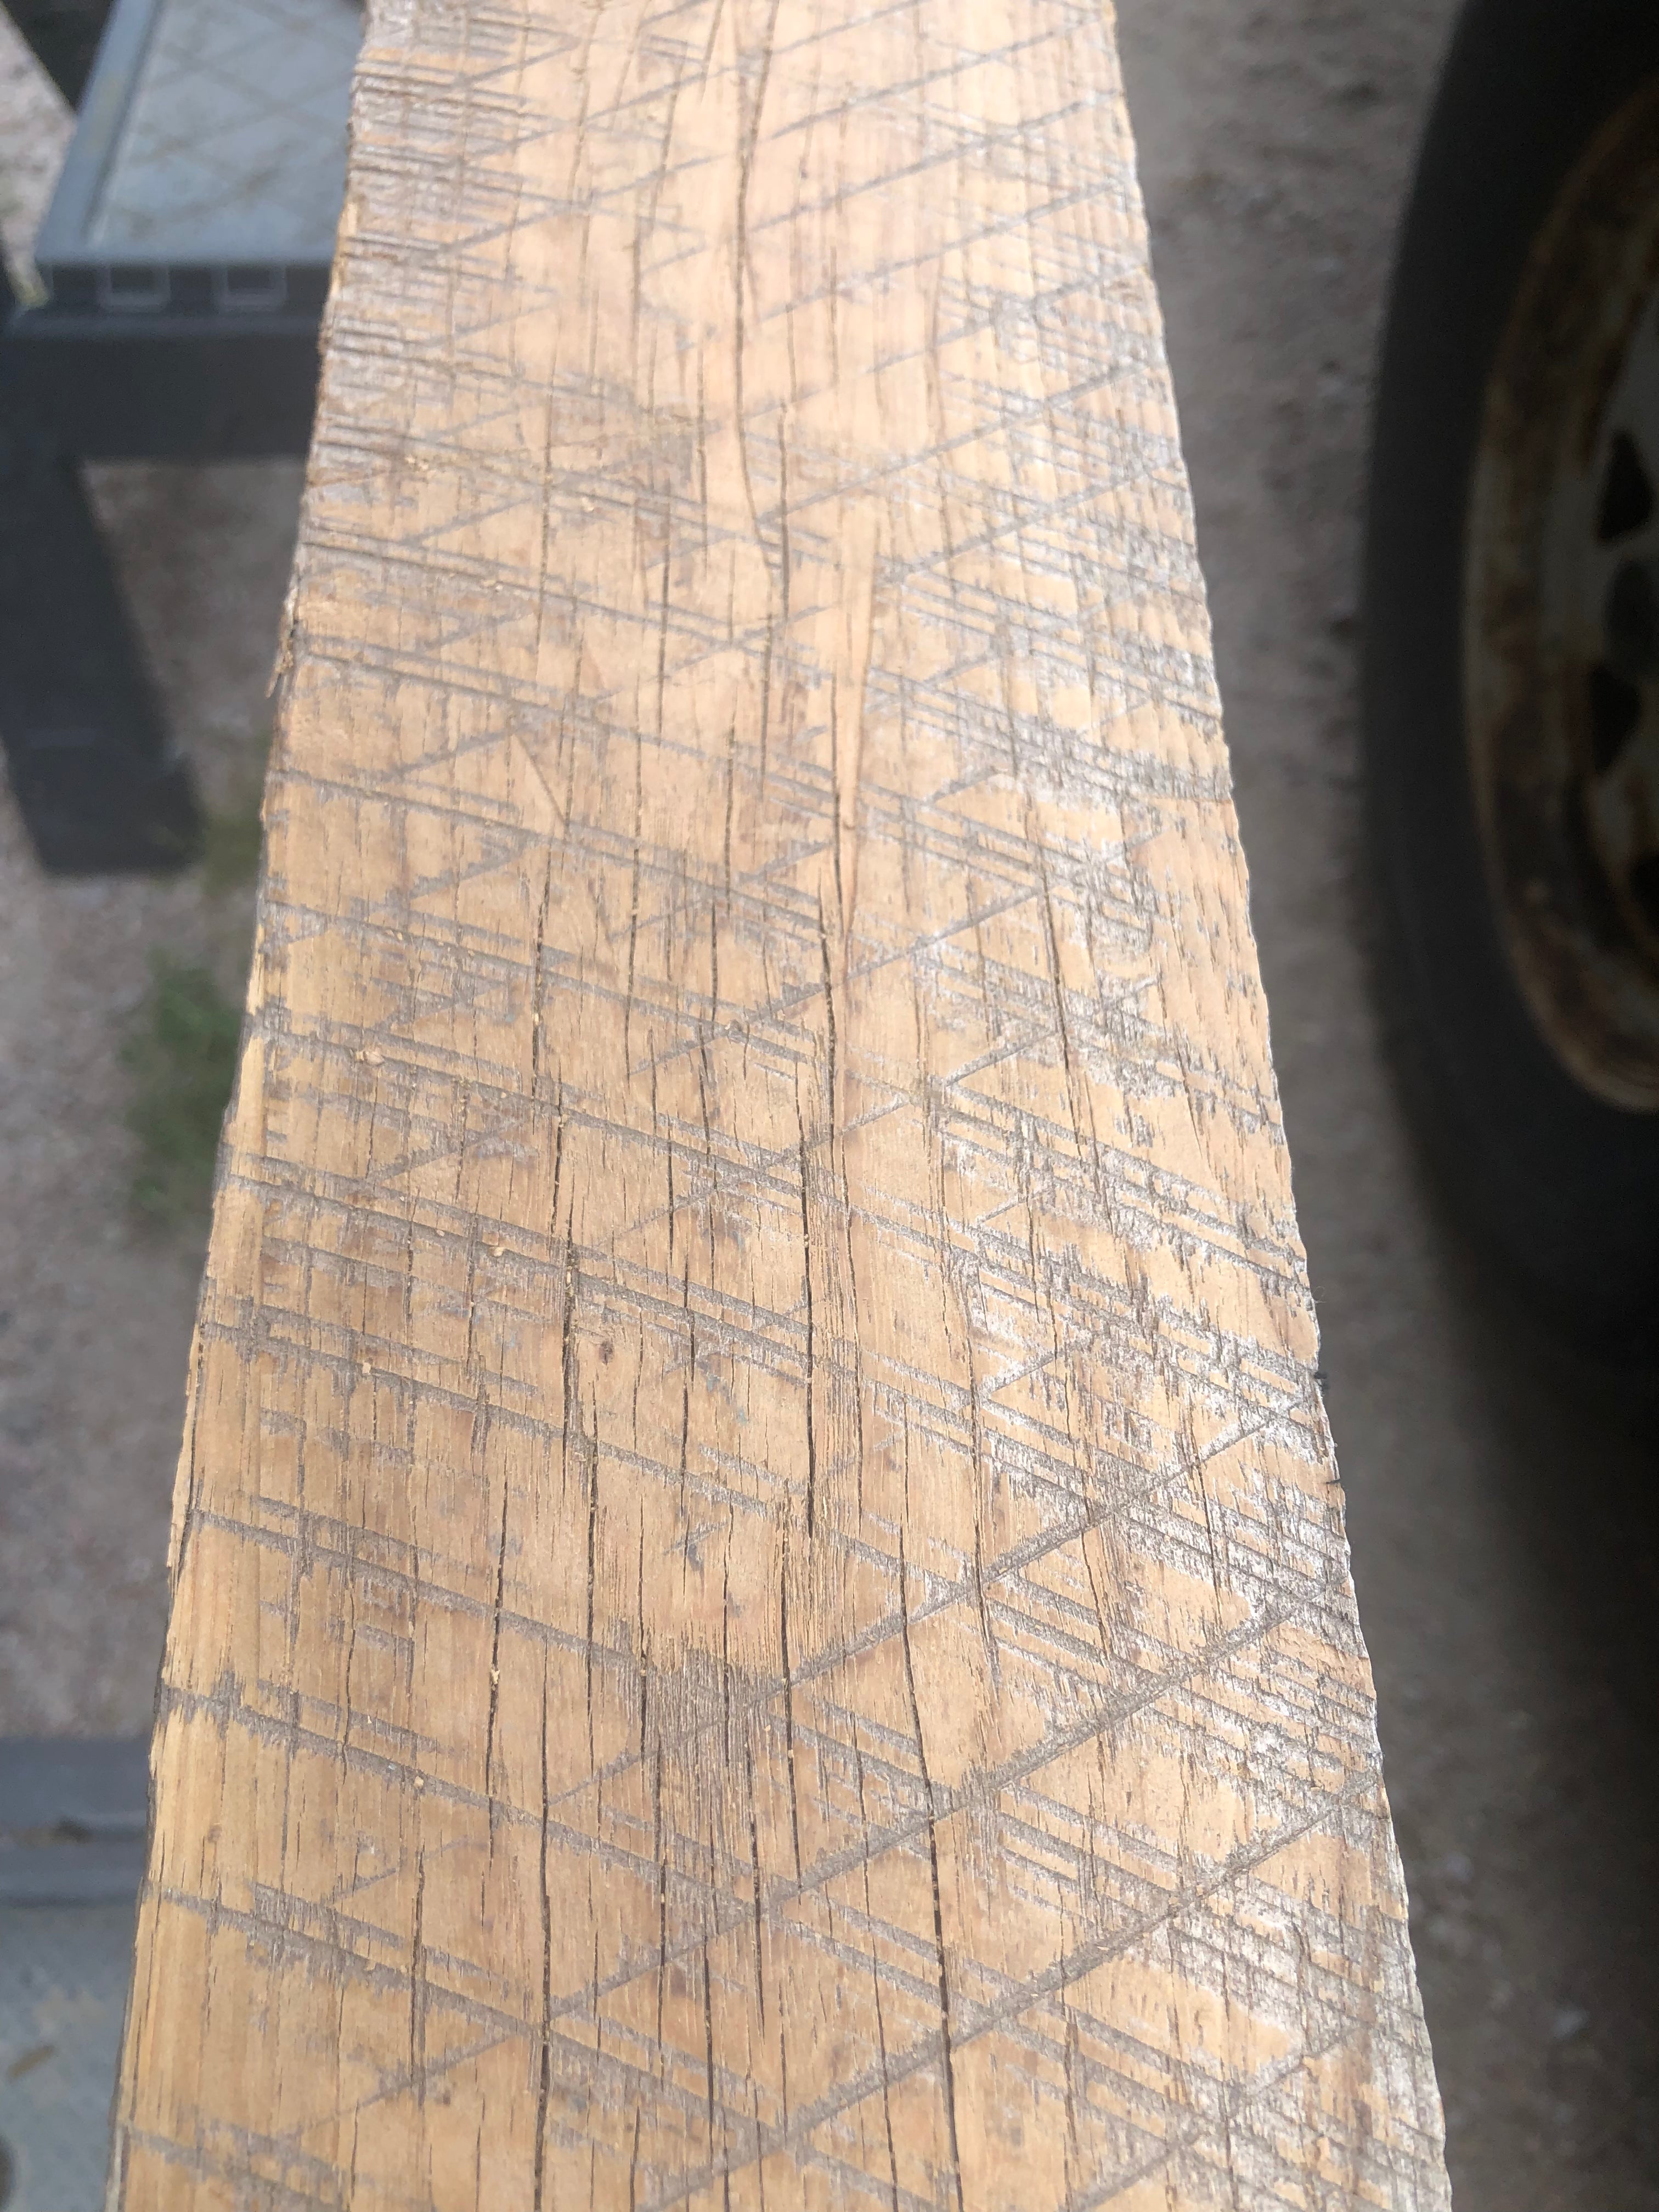 Barn red oak 2” x 4” rough sawn